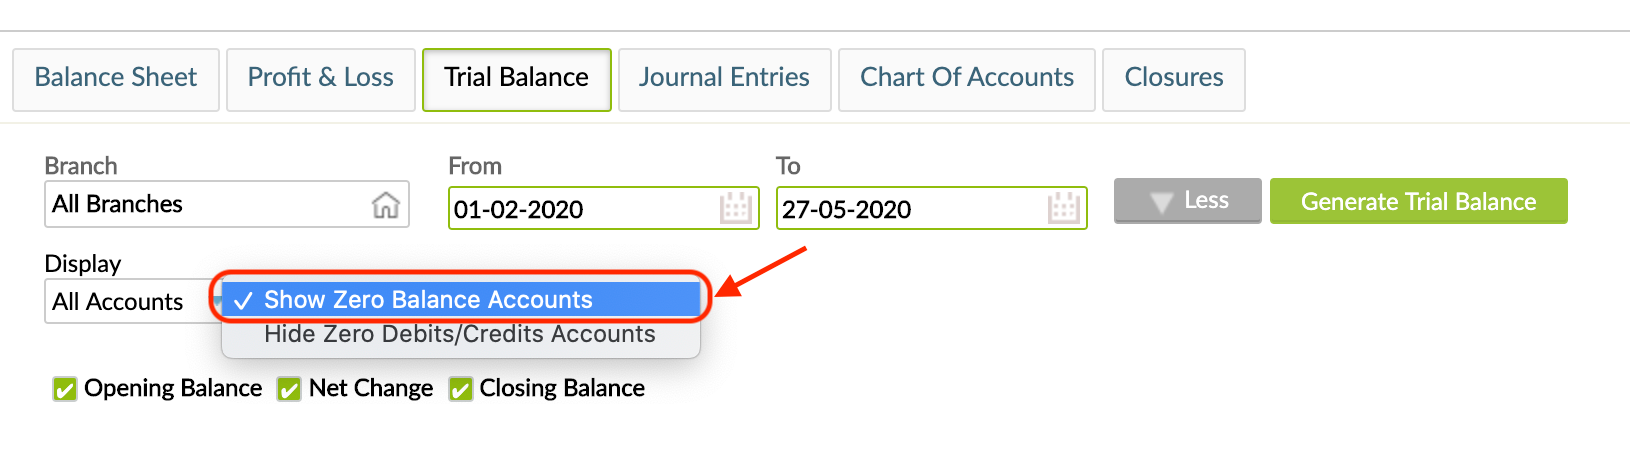 Show zero balance accounts in the Balance Sheet